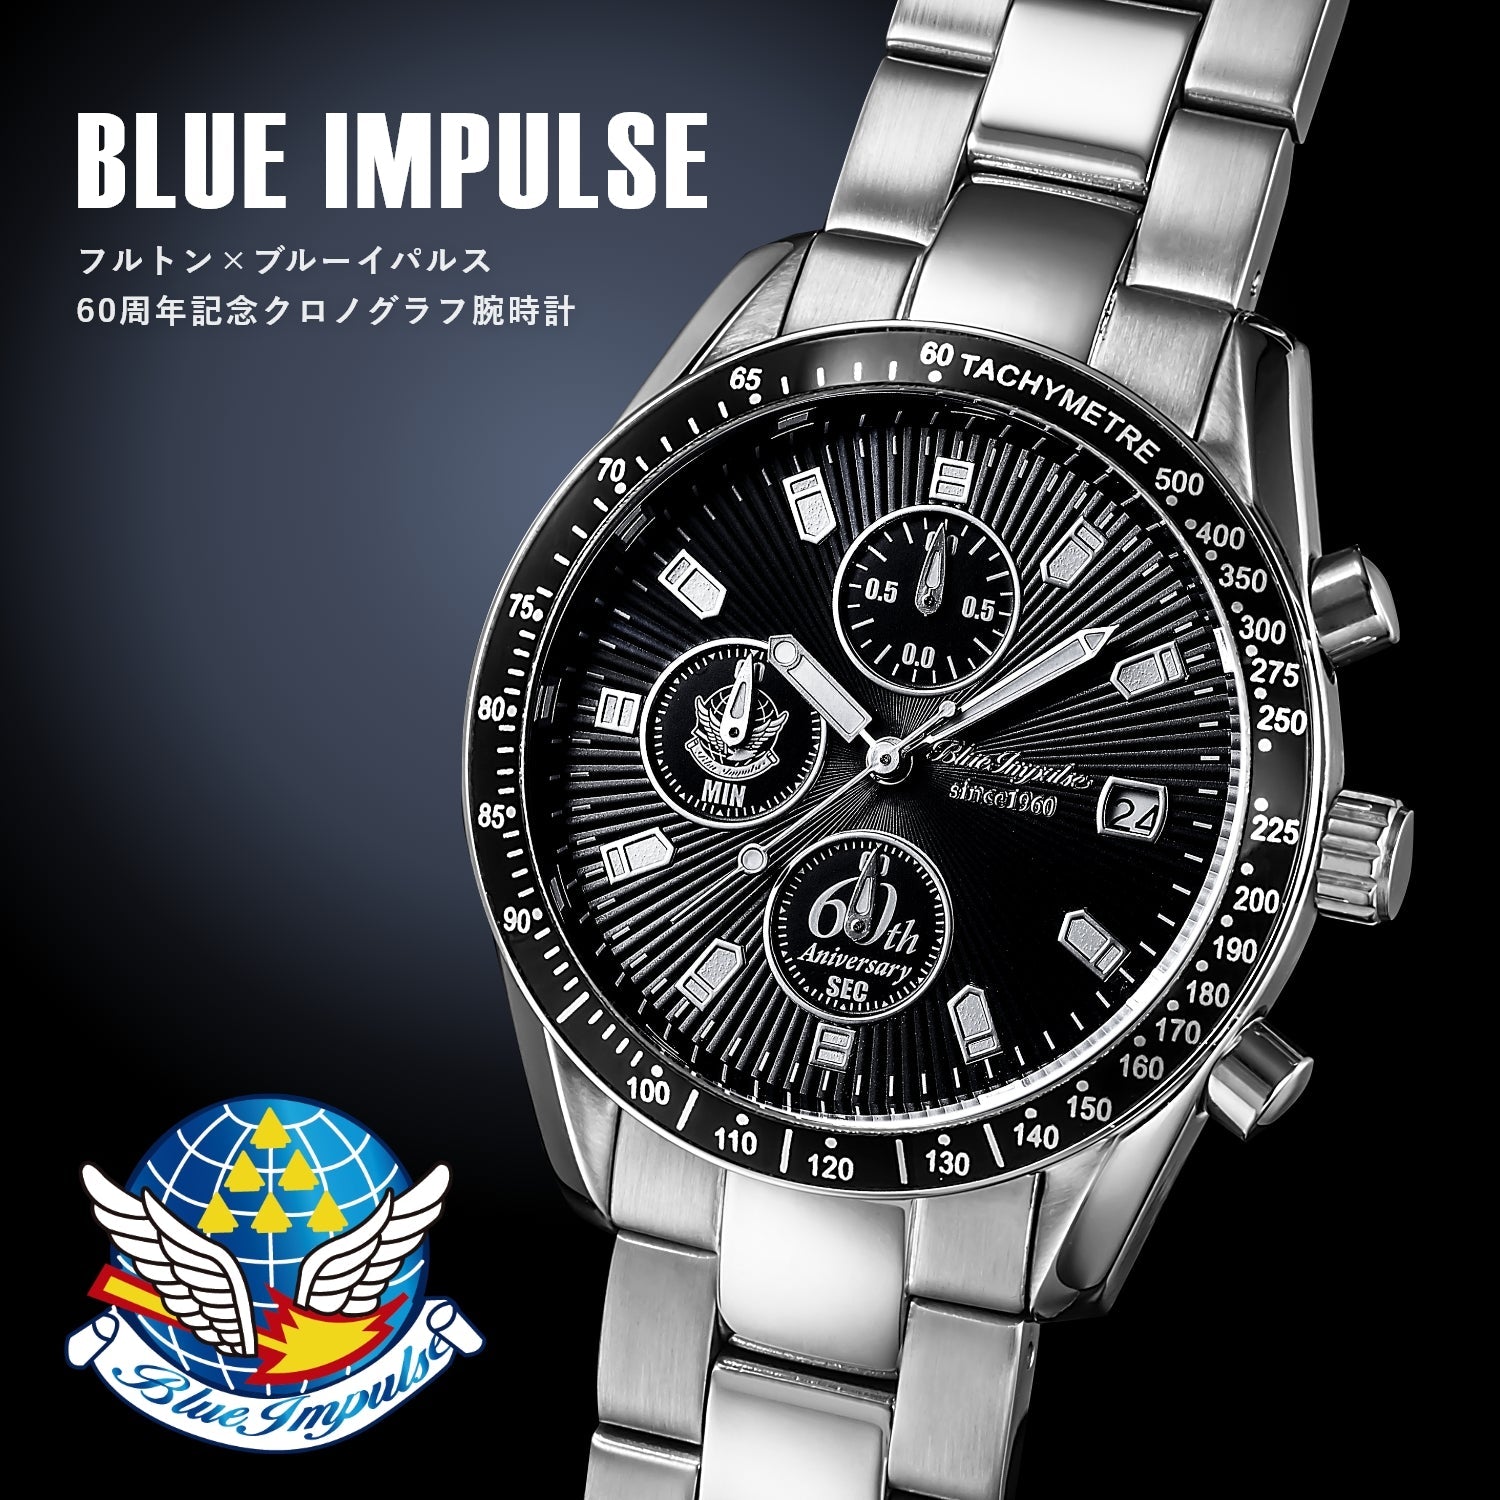 ブルーインパルス60周年記念 正式ライセンス クロノグラフ腕時計 - 公式通販サイト「アニメコレクション/Anime Collection」